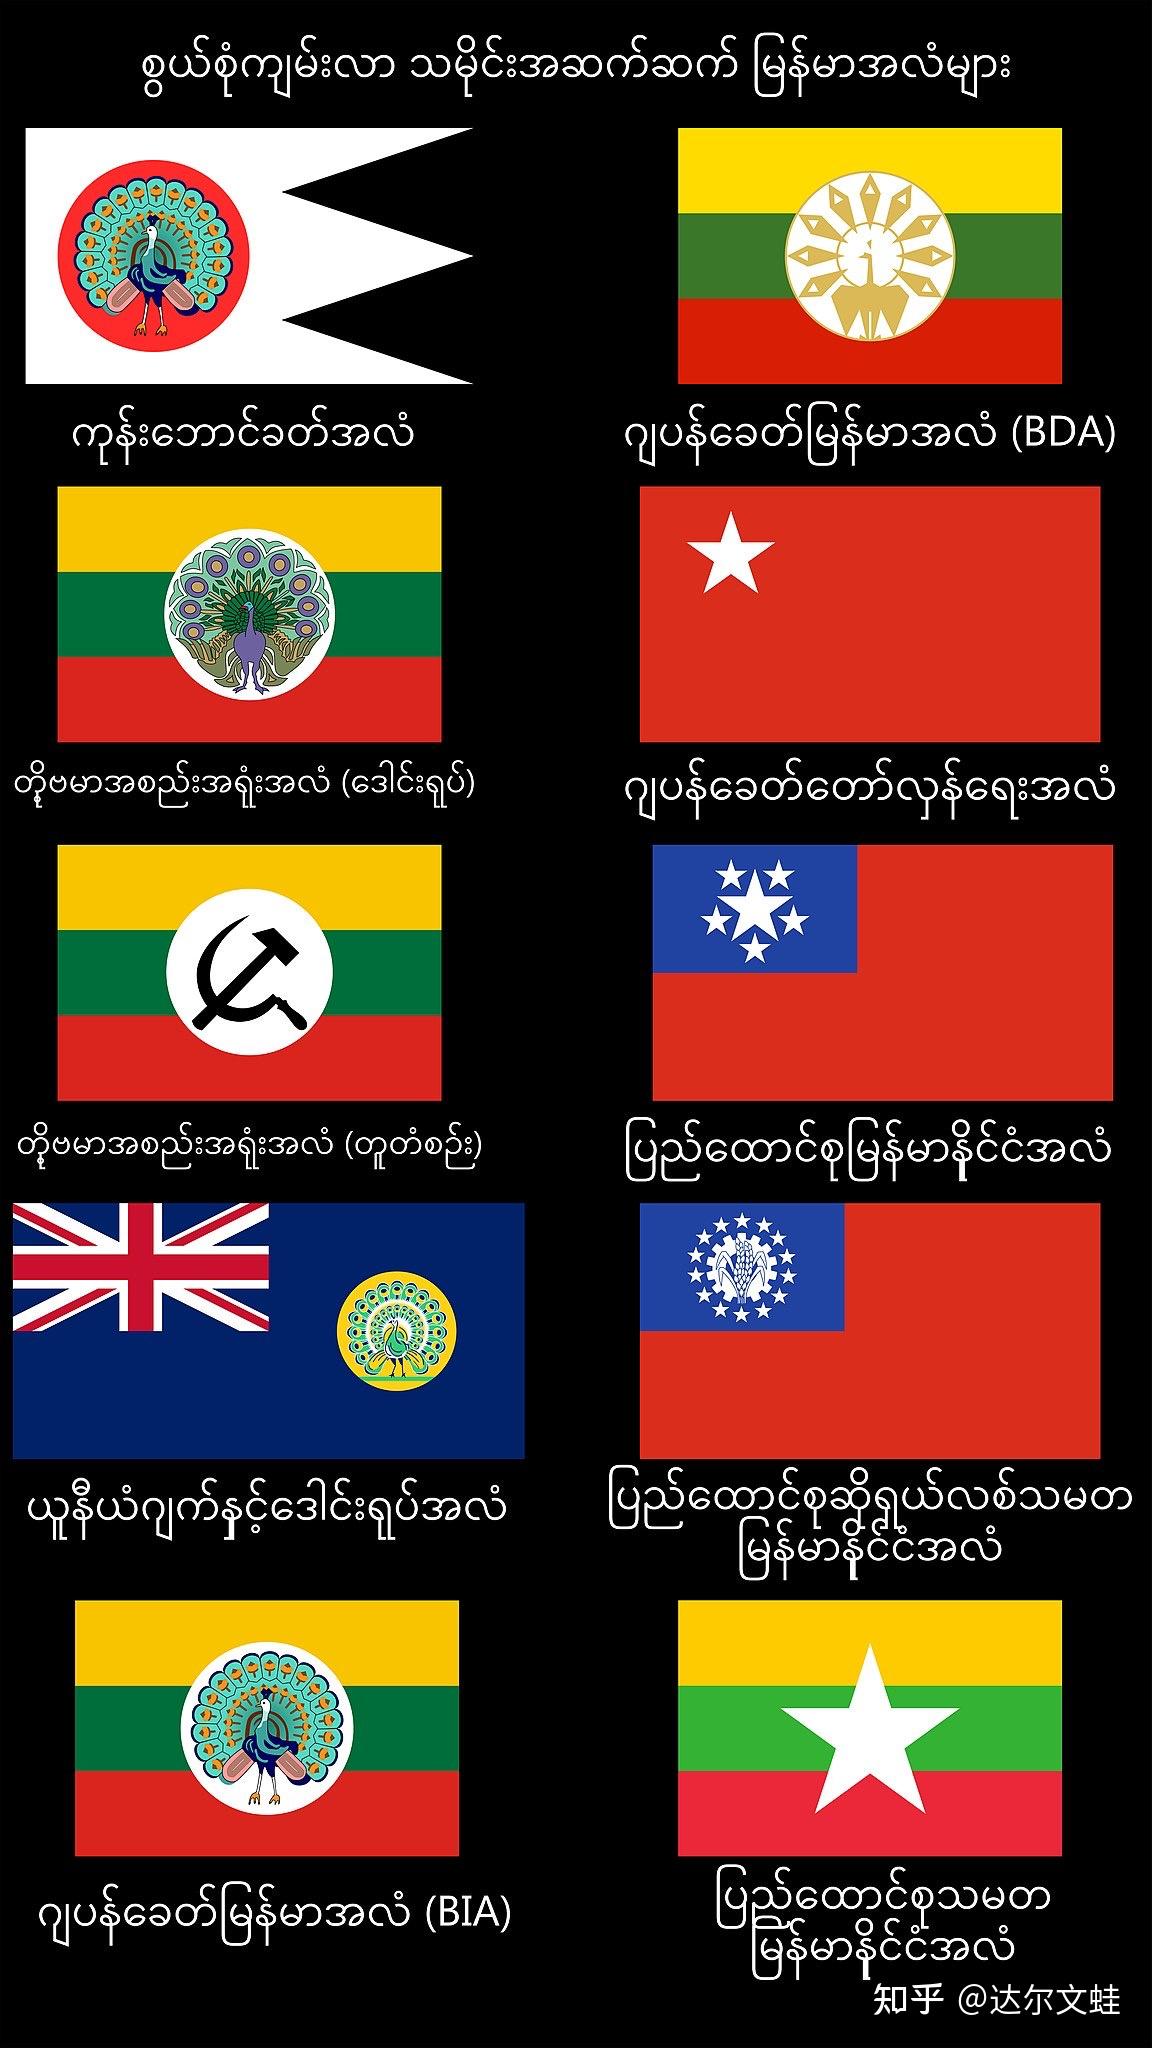 缅北旗帜徽章研究——战乱与中国影响